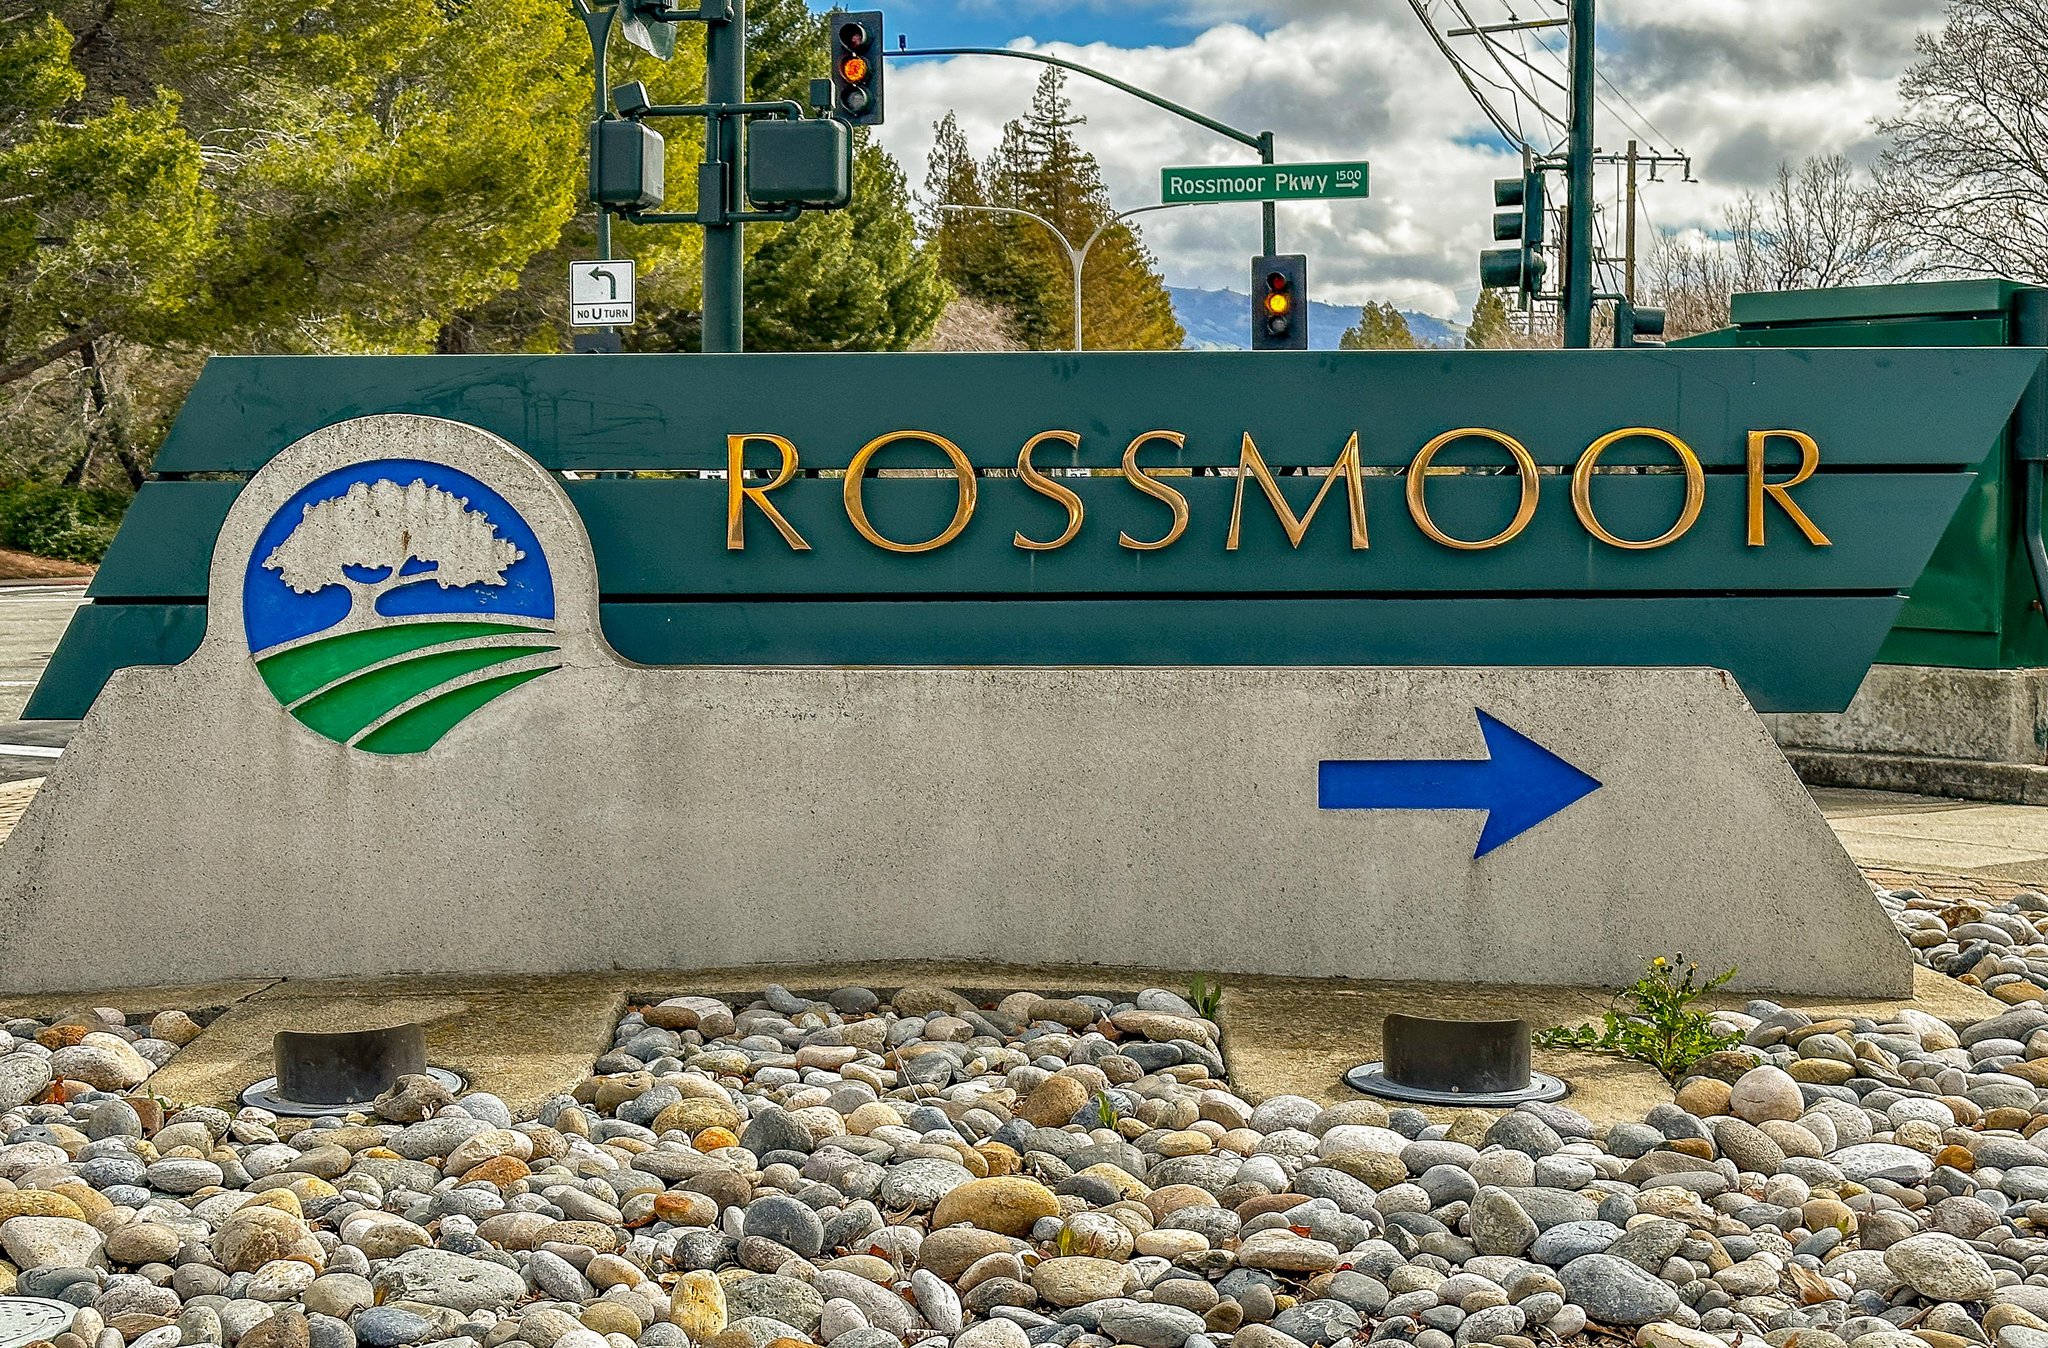 Welcome to Rossmoor